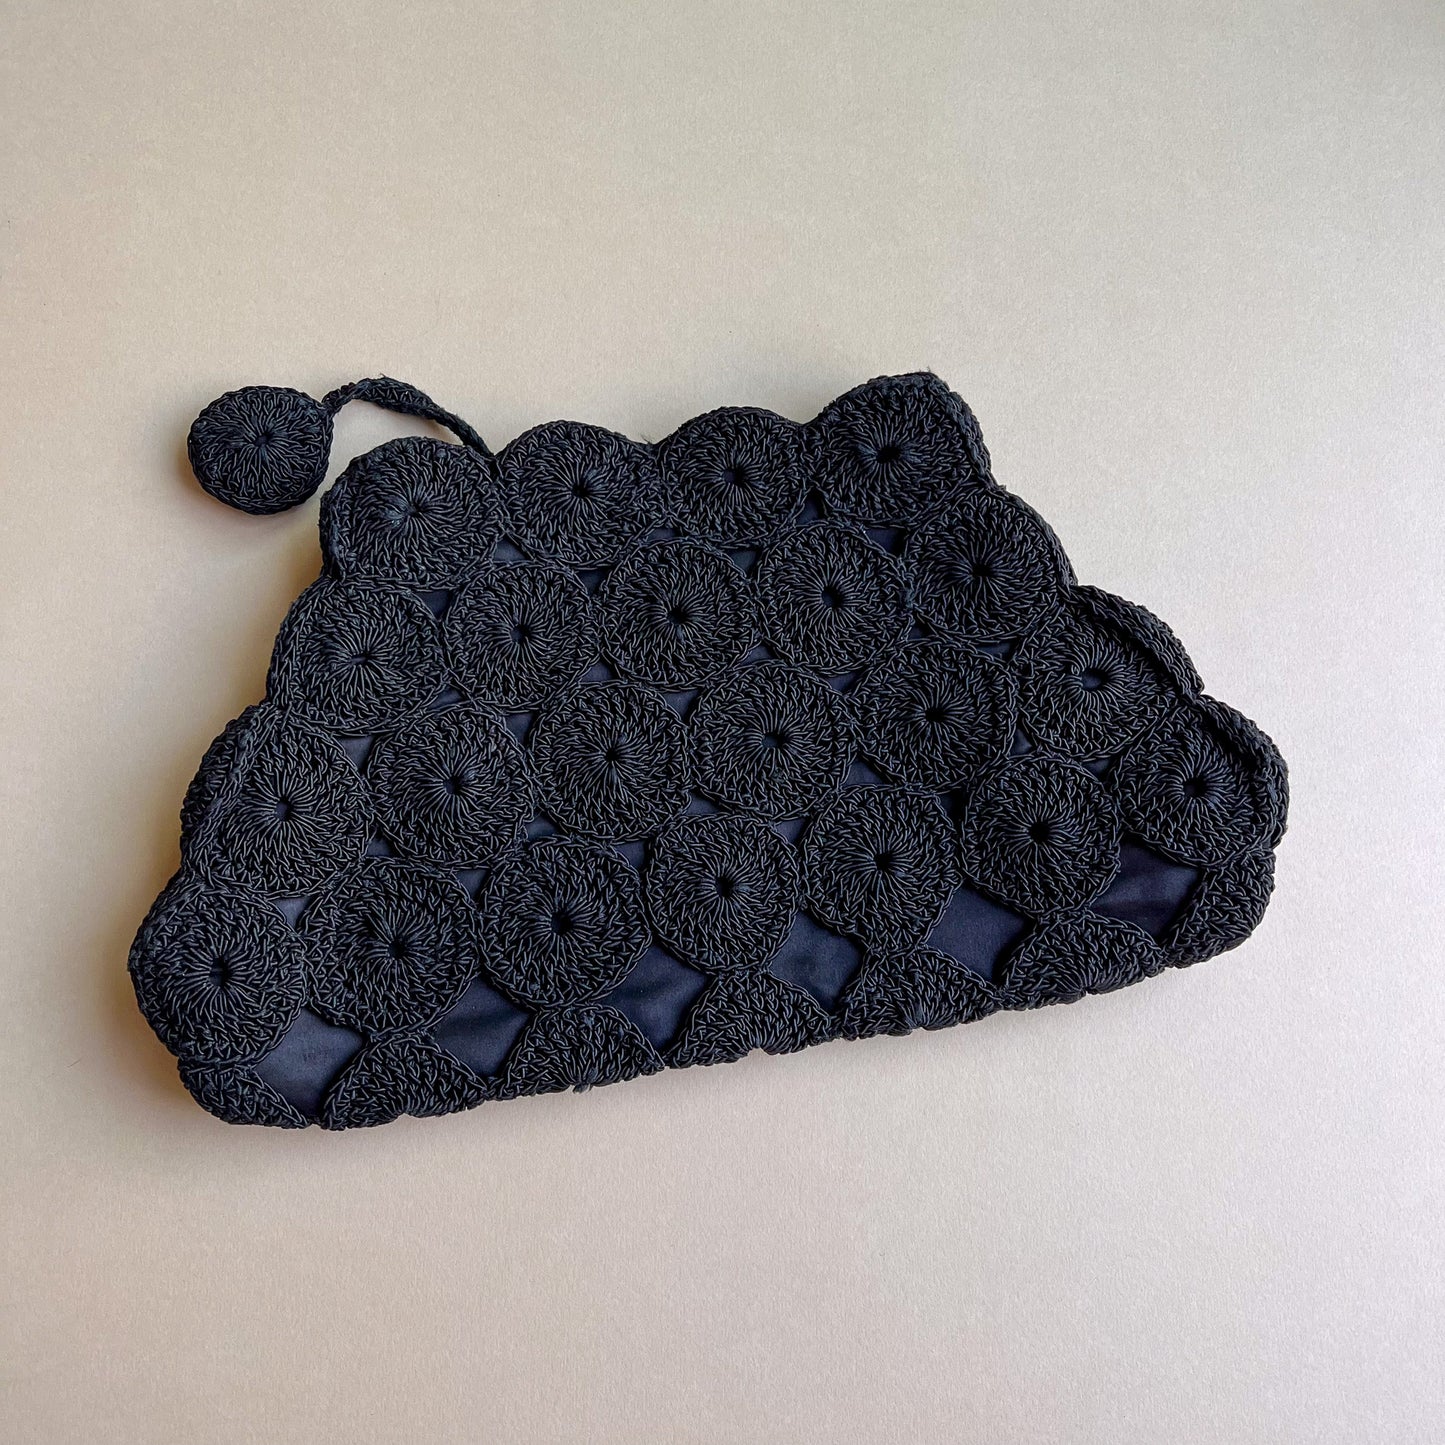 Darling 1940s Black Crochet Oversized Clutch